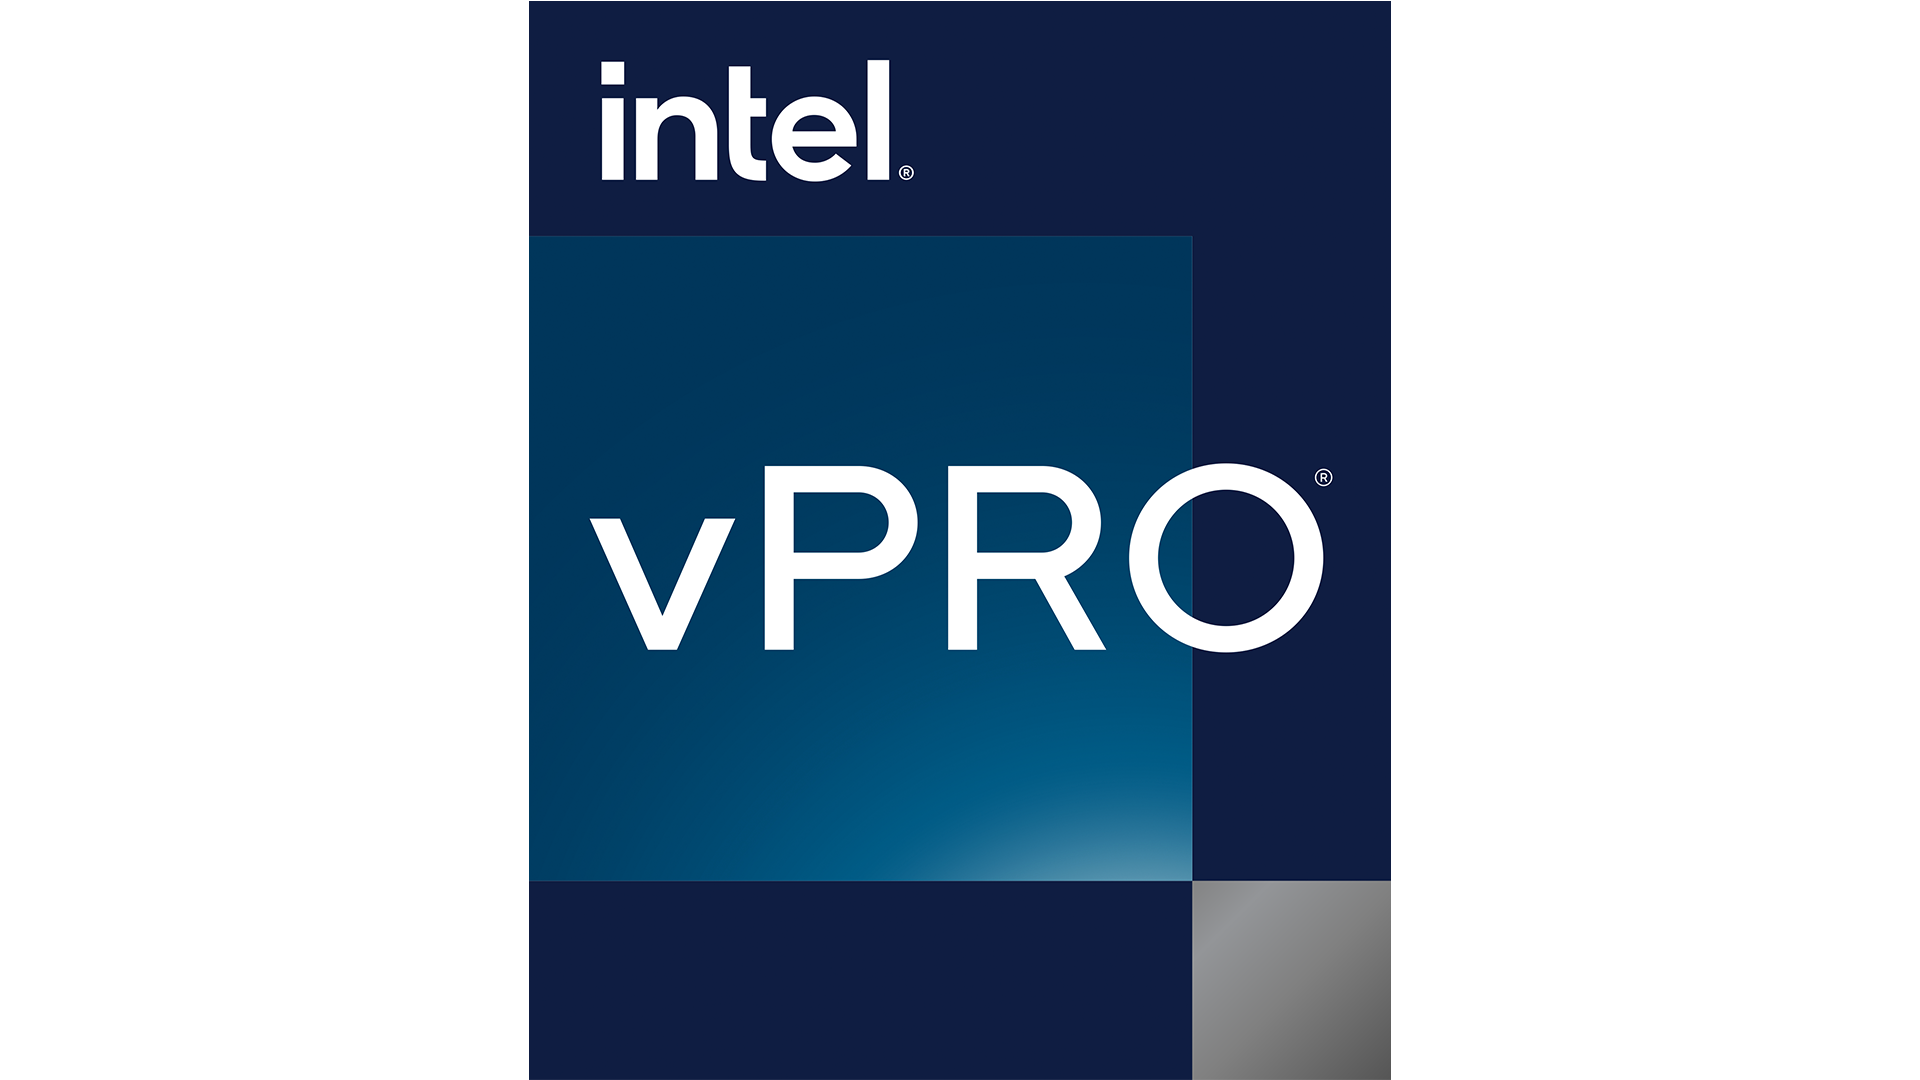 Foto de Intel presenta vPro, la plataforma ideal para un rendimiento empresarial revolucionario